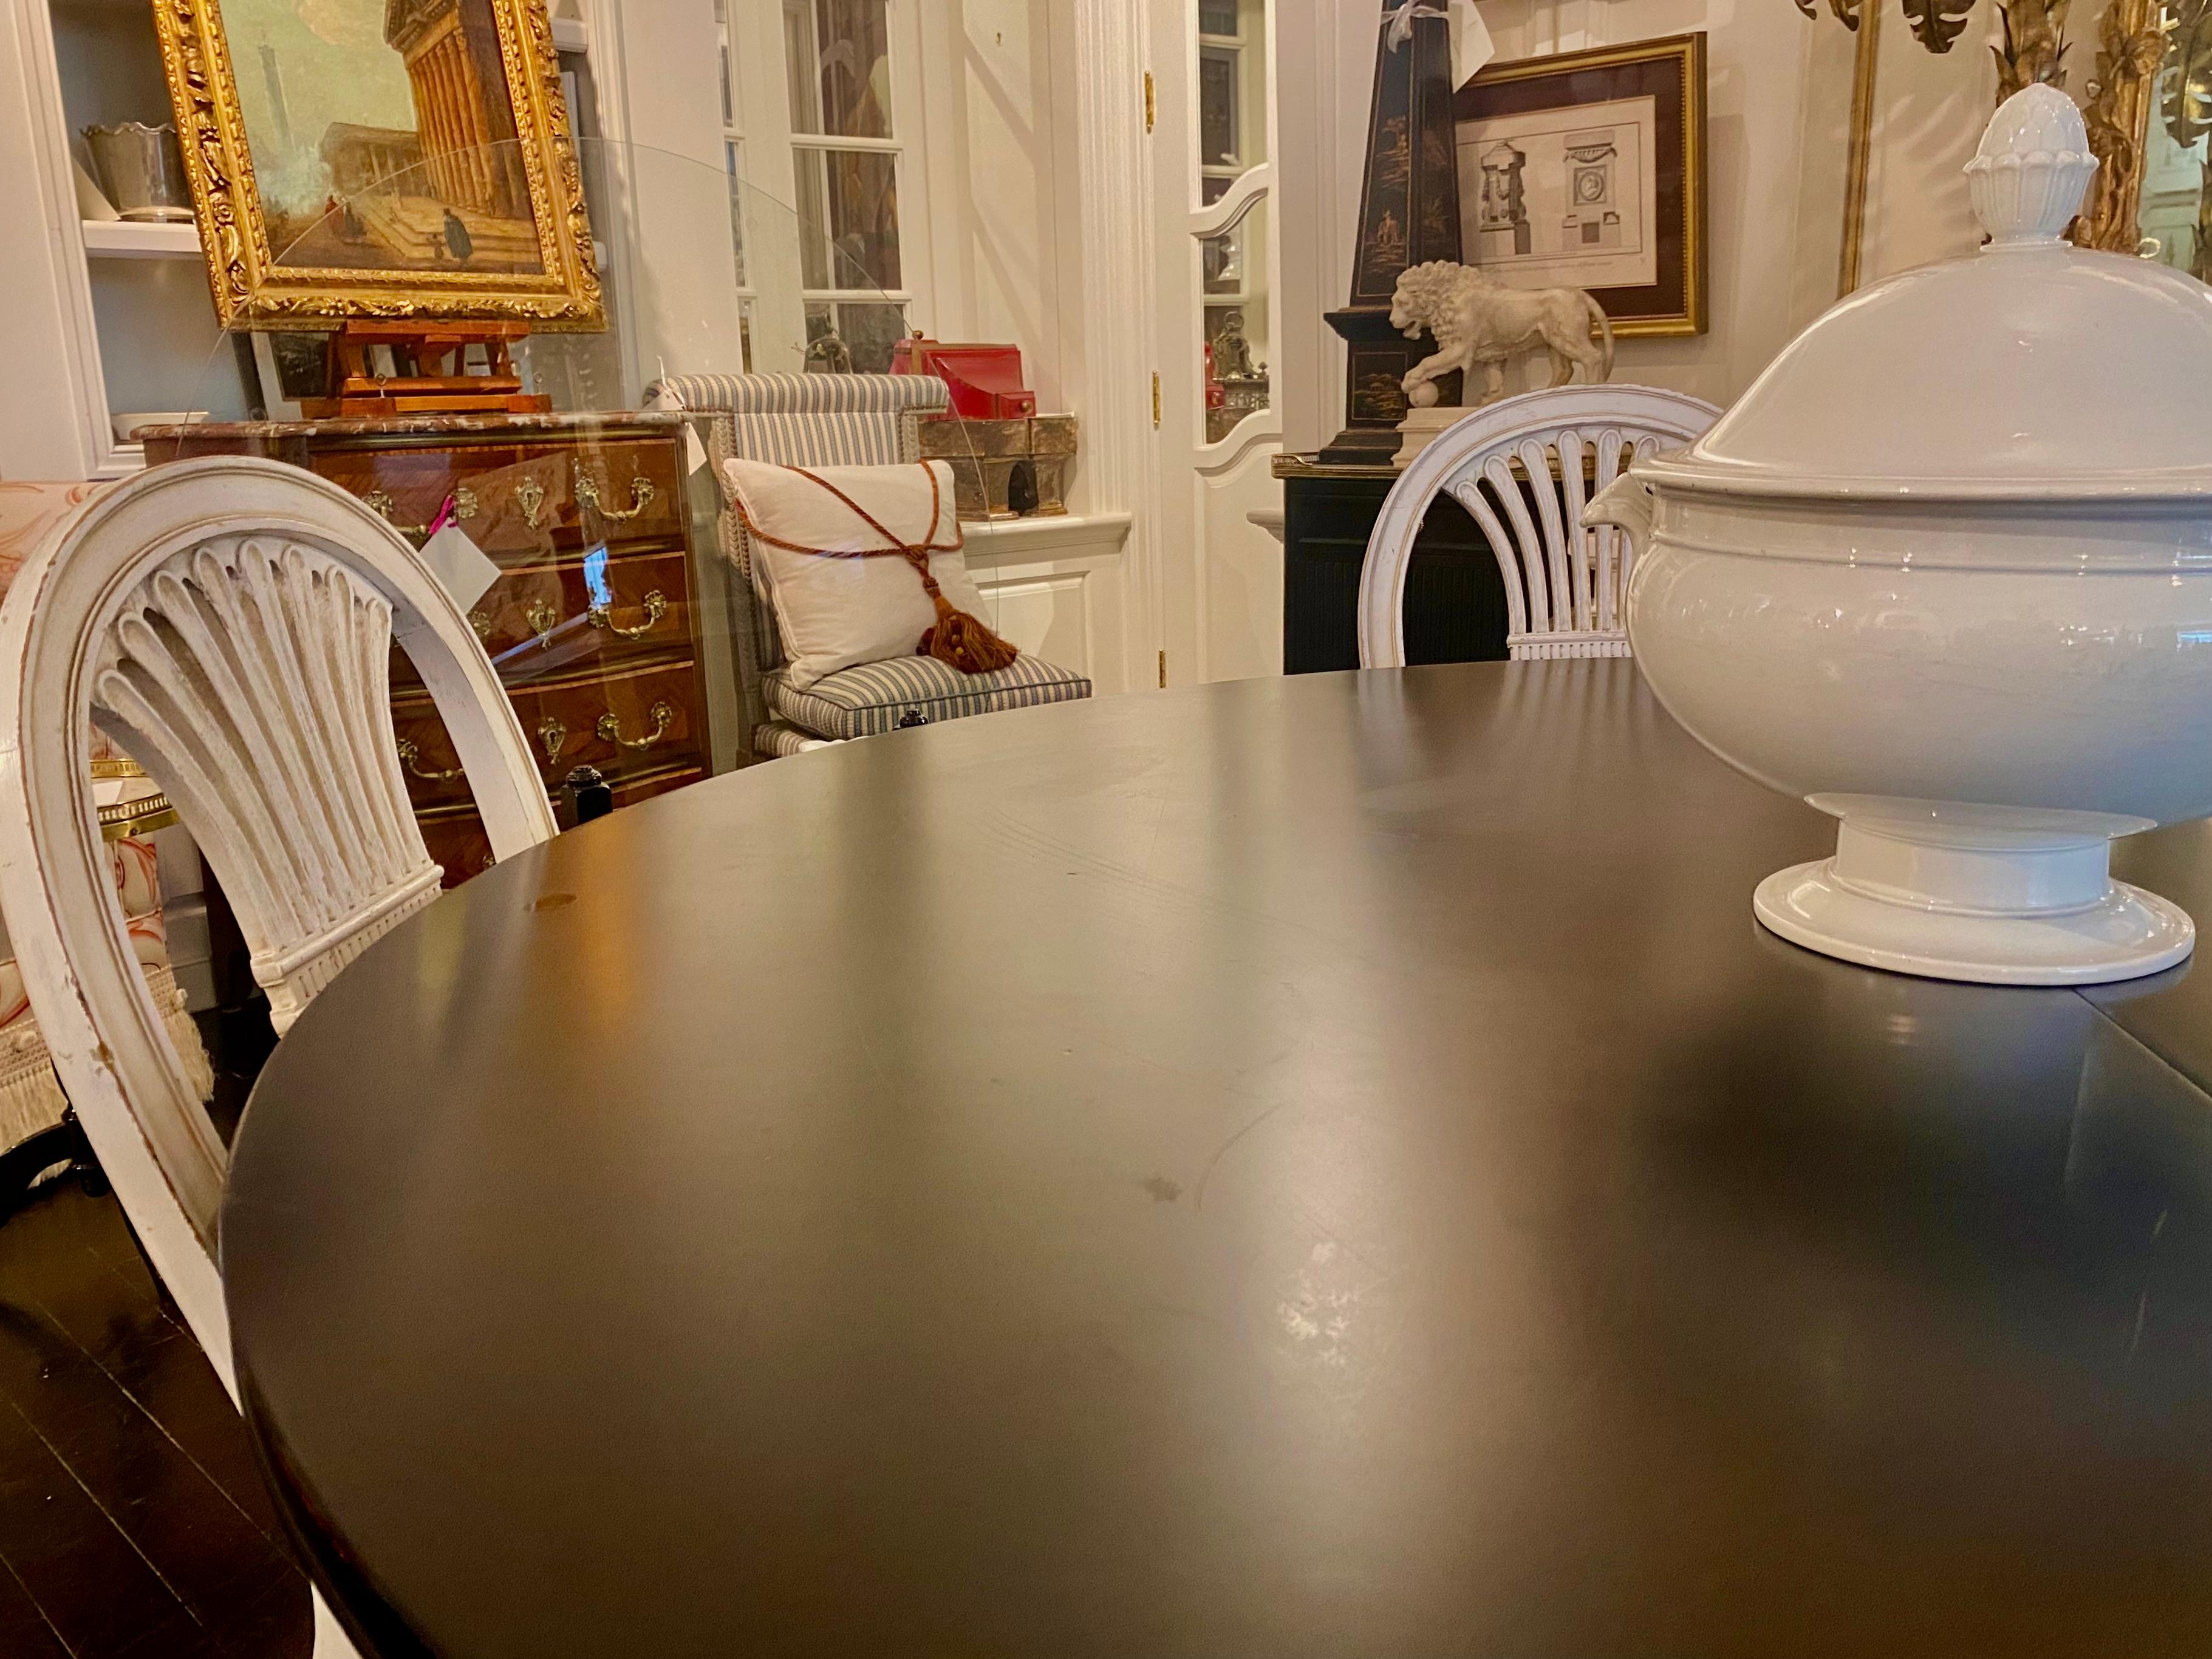 Table noire estampillée Maison Jansen, française, style Louis XVI, mi-siècle moderne

Table de salle à manger polyvalente, portant la marque claire de Maison Jewell, et toutes les caractéristiques d'une pièce de Maison Jewell - une interprétation